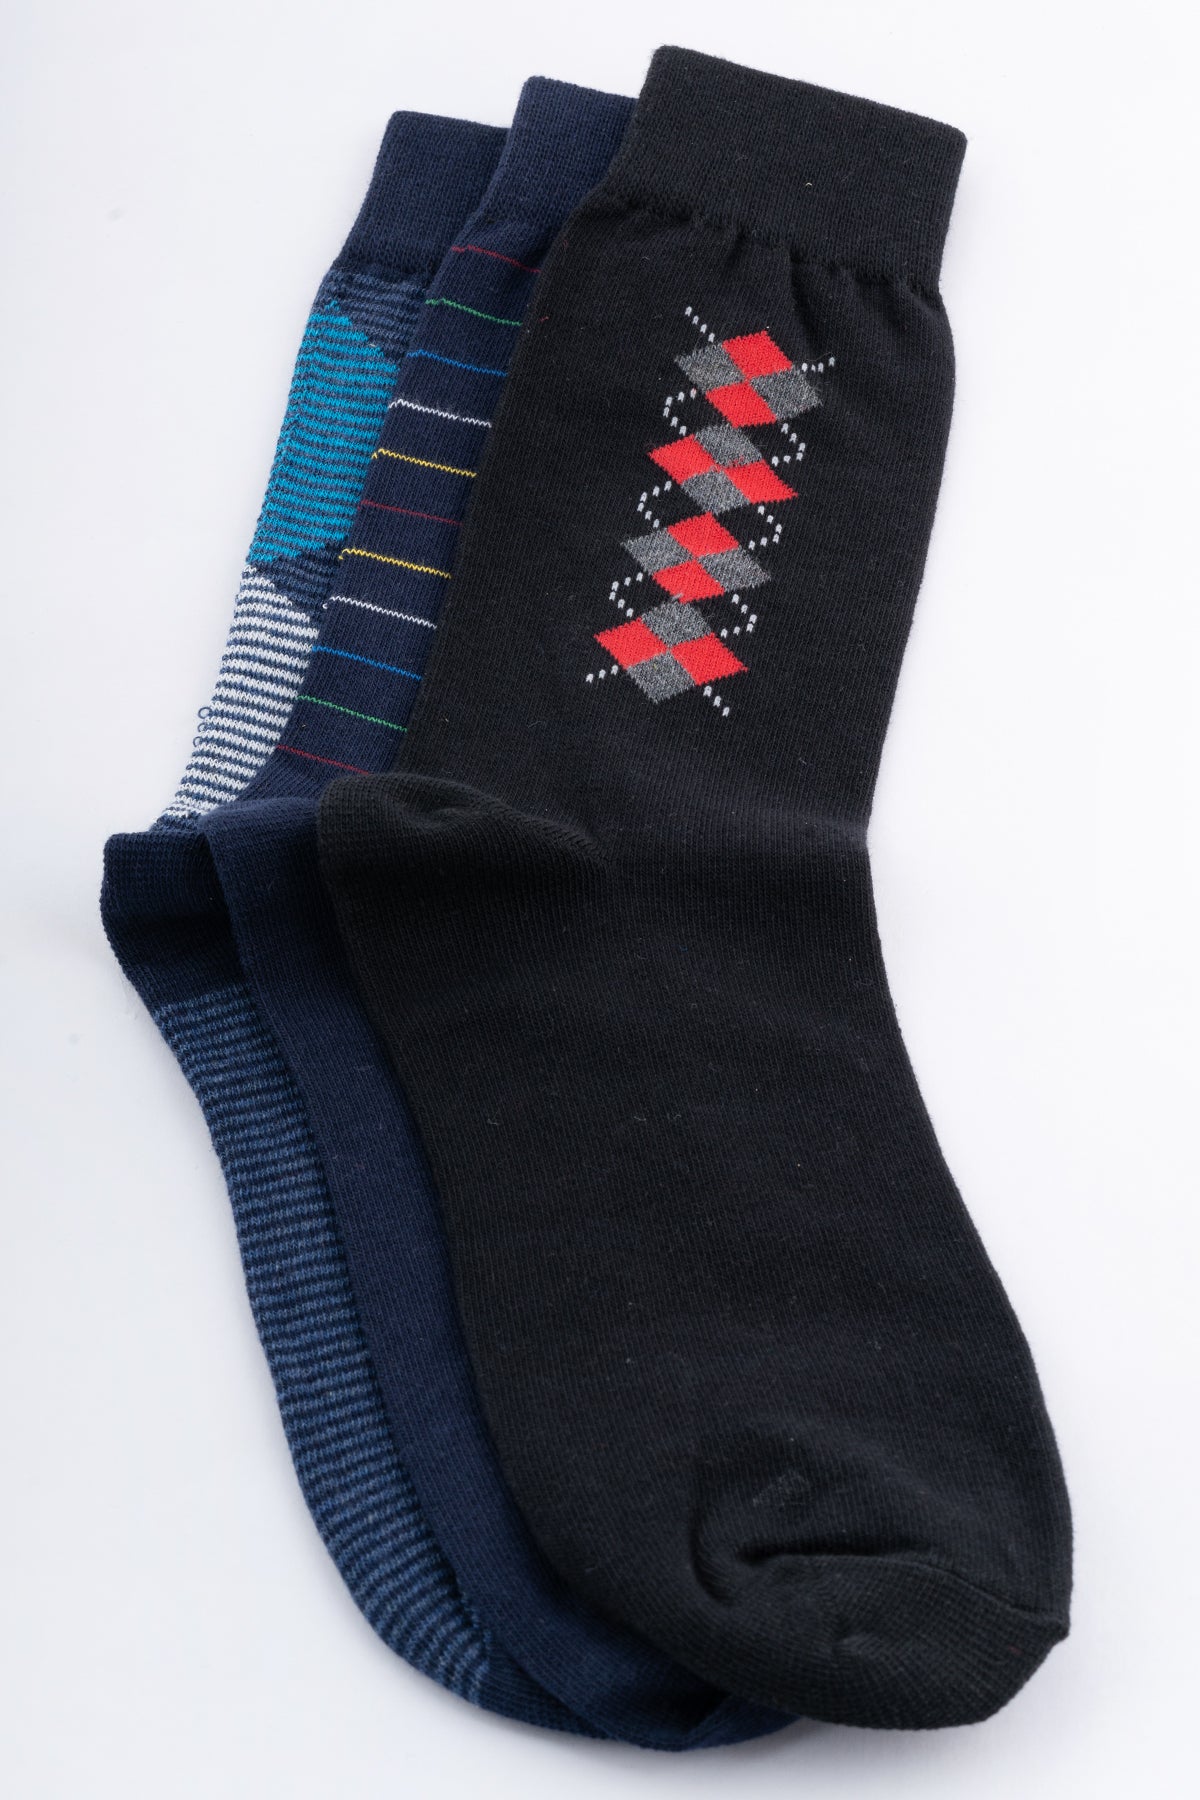 Men's Cotton Blended Socks (Combo Set)(3 pairs)